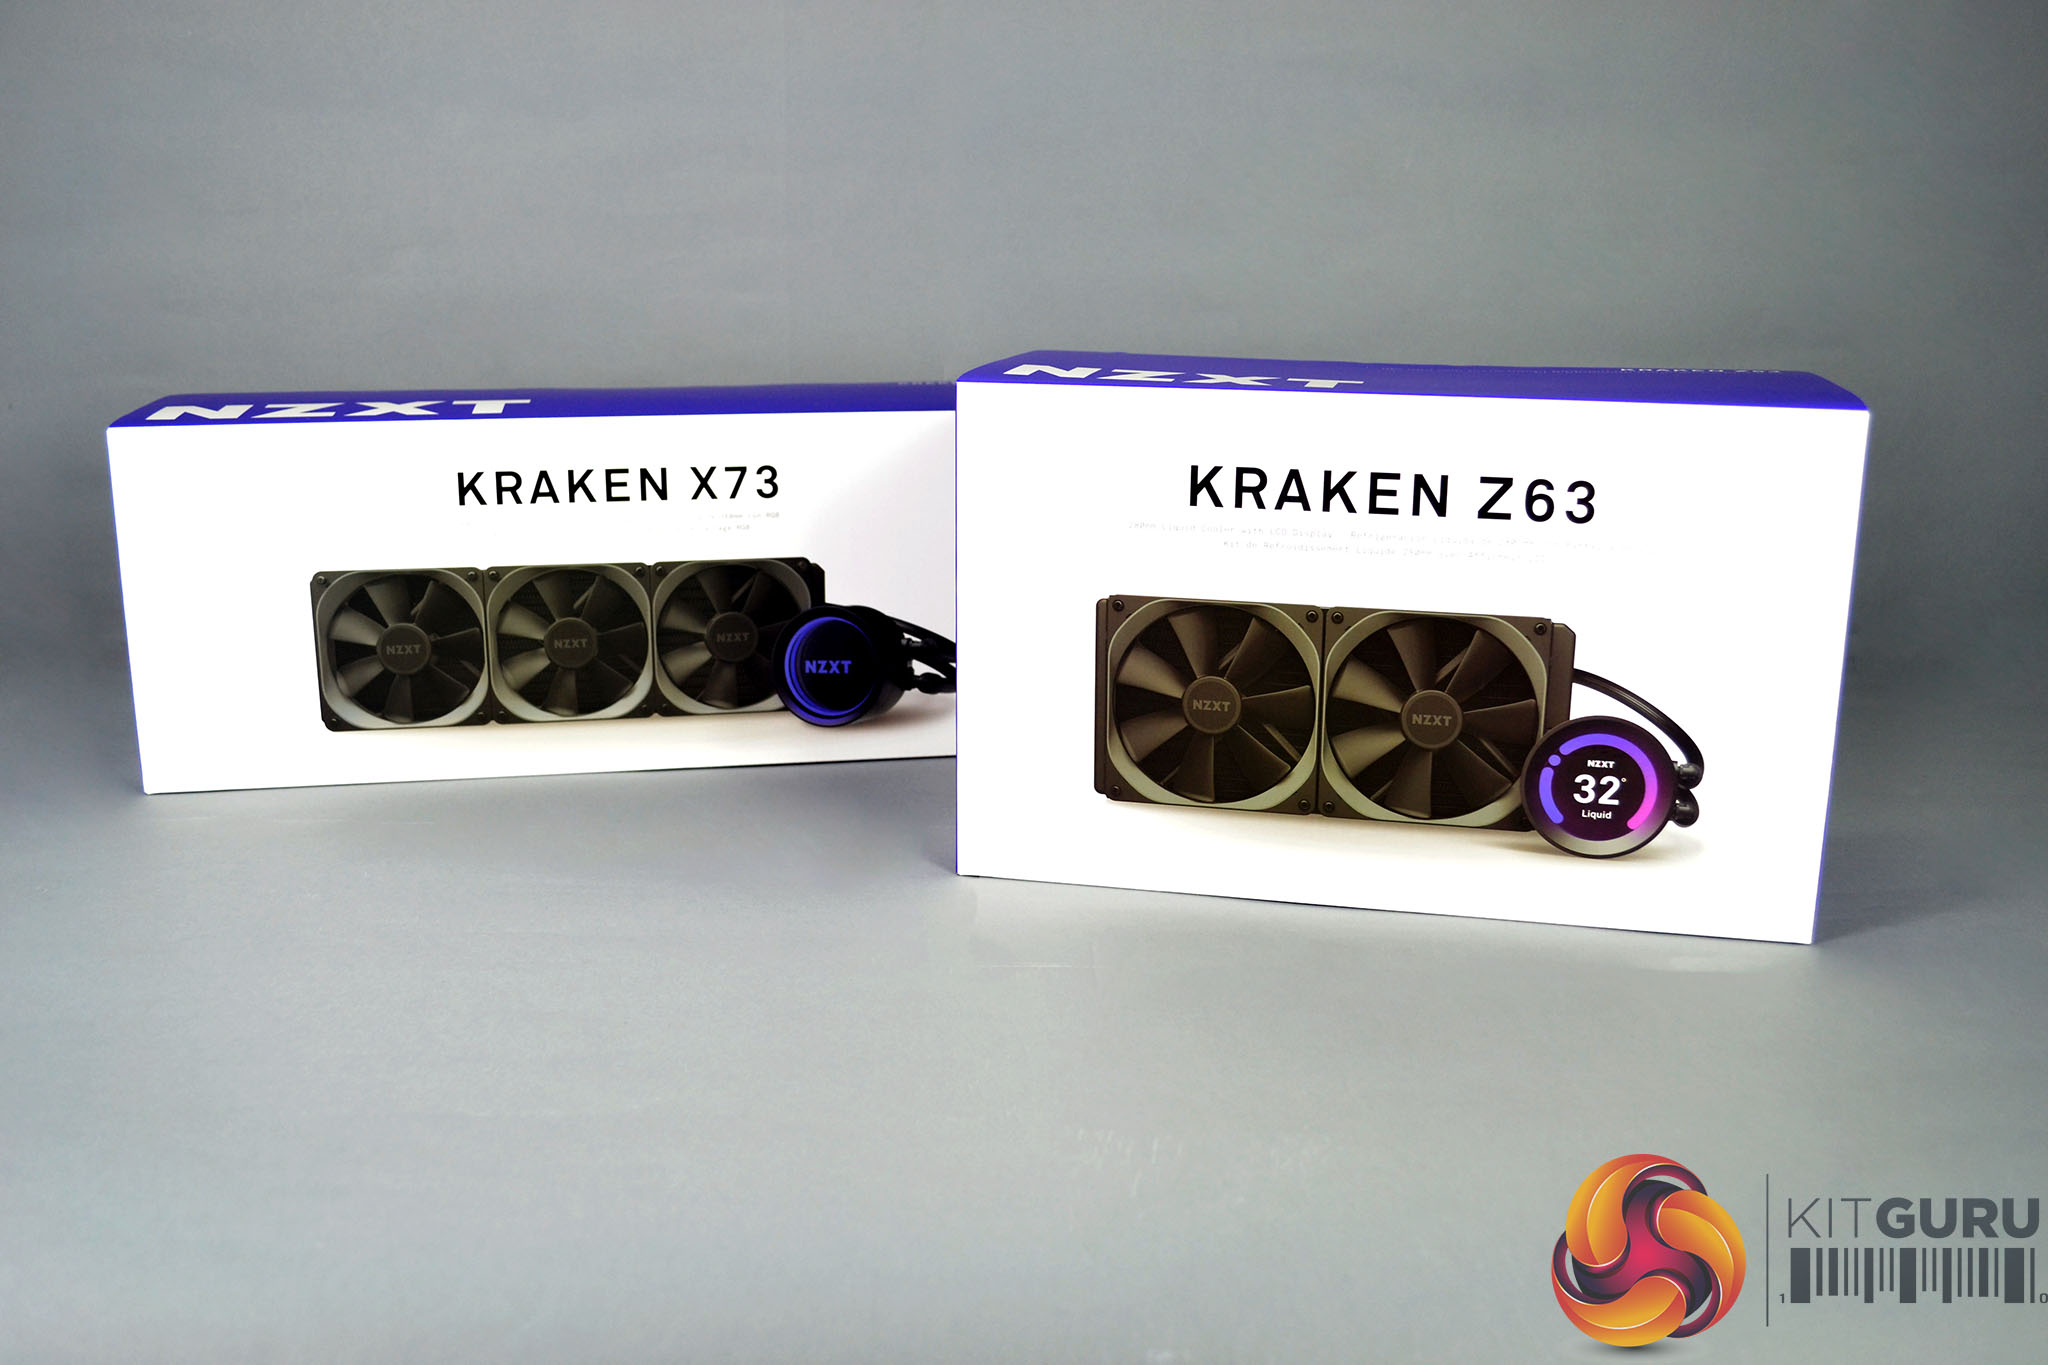 Nzxt Kraken X73 Z63 Aio Cpu Cooler Review Kitguru Part 2